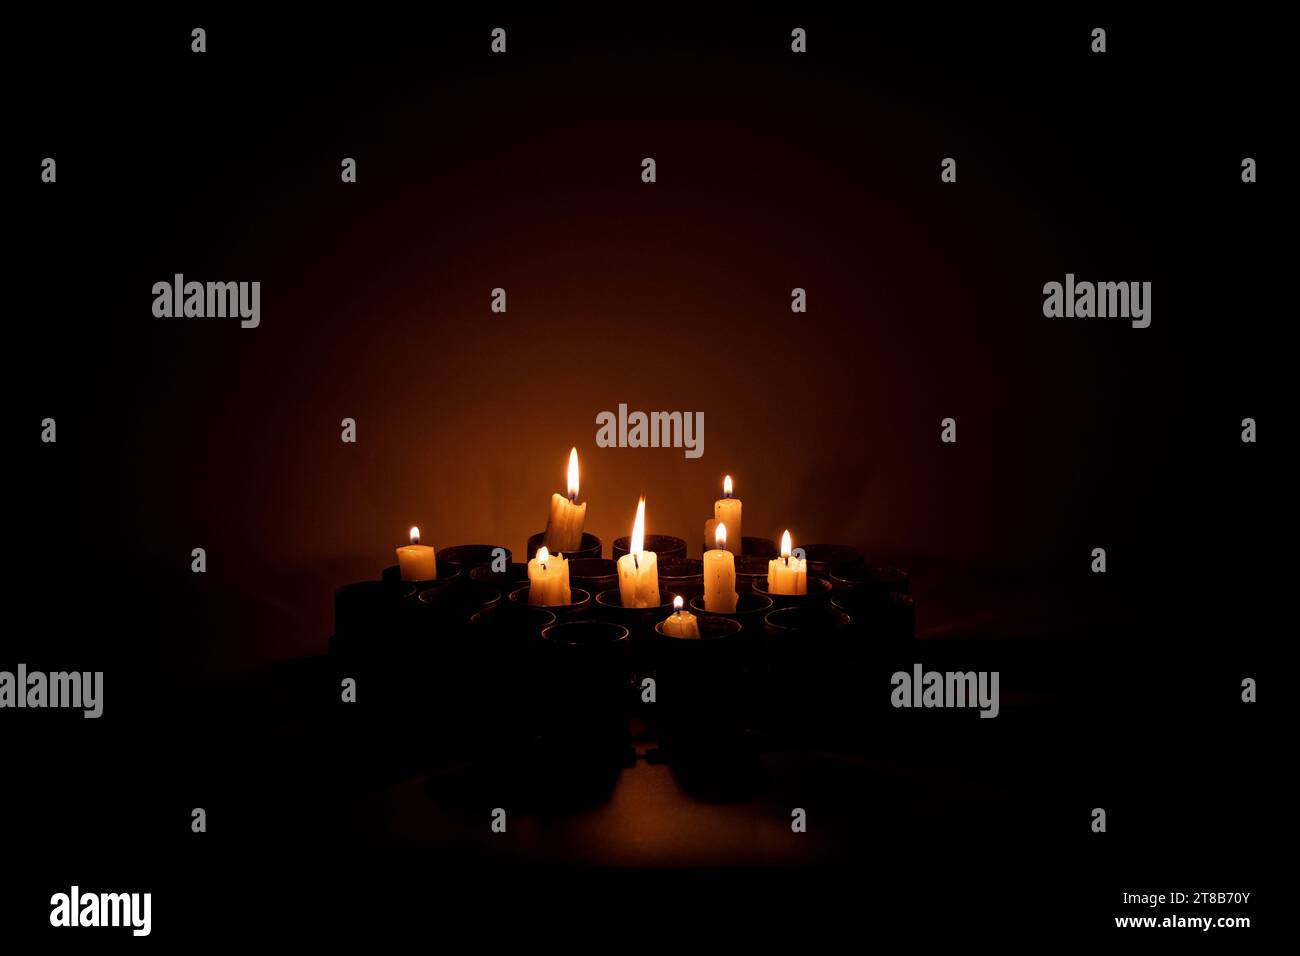 Le candele incendiate si trovano in involucri di lanciagranate sprecati al buio, tristezza per coloro che sono stati uccisi nella guerra in Ucraina Foto Stock